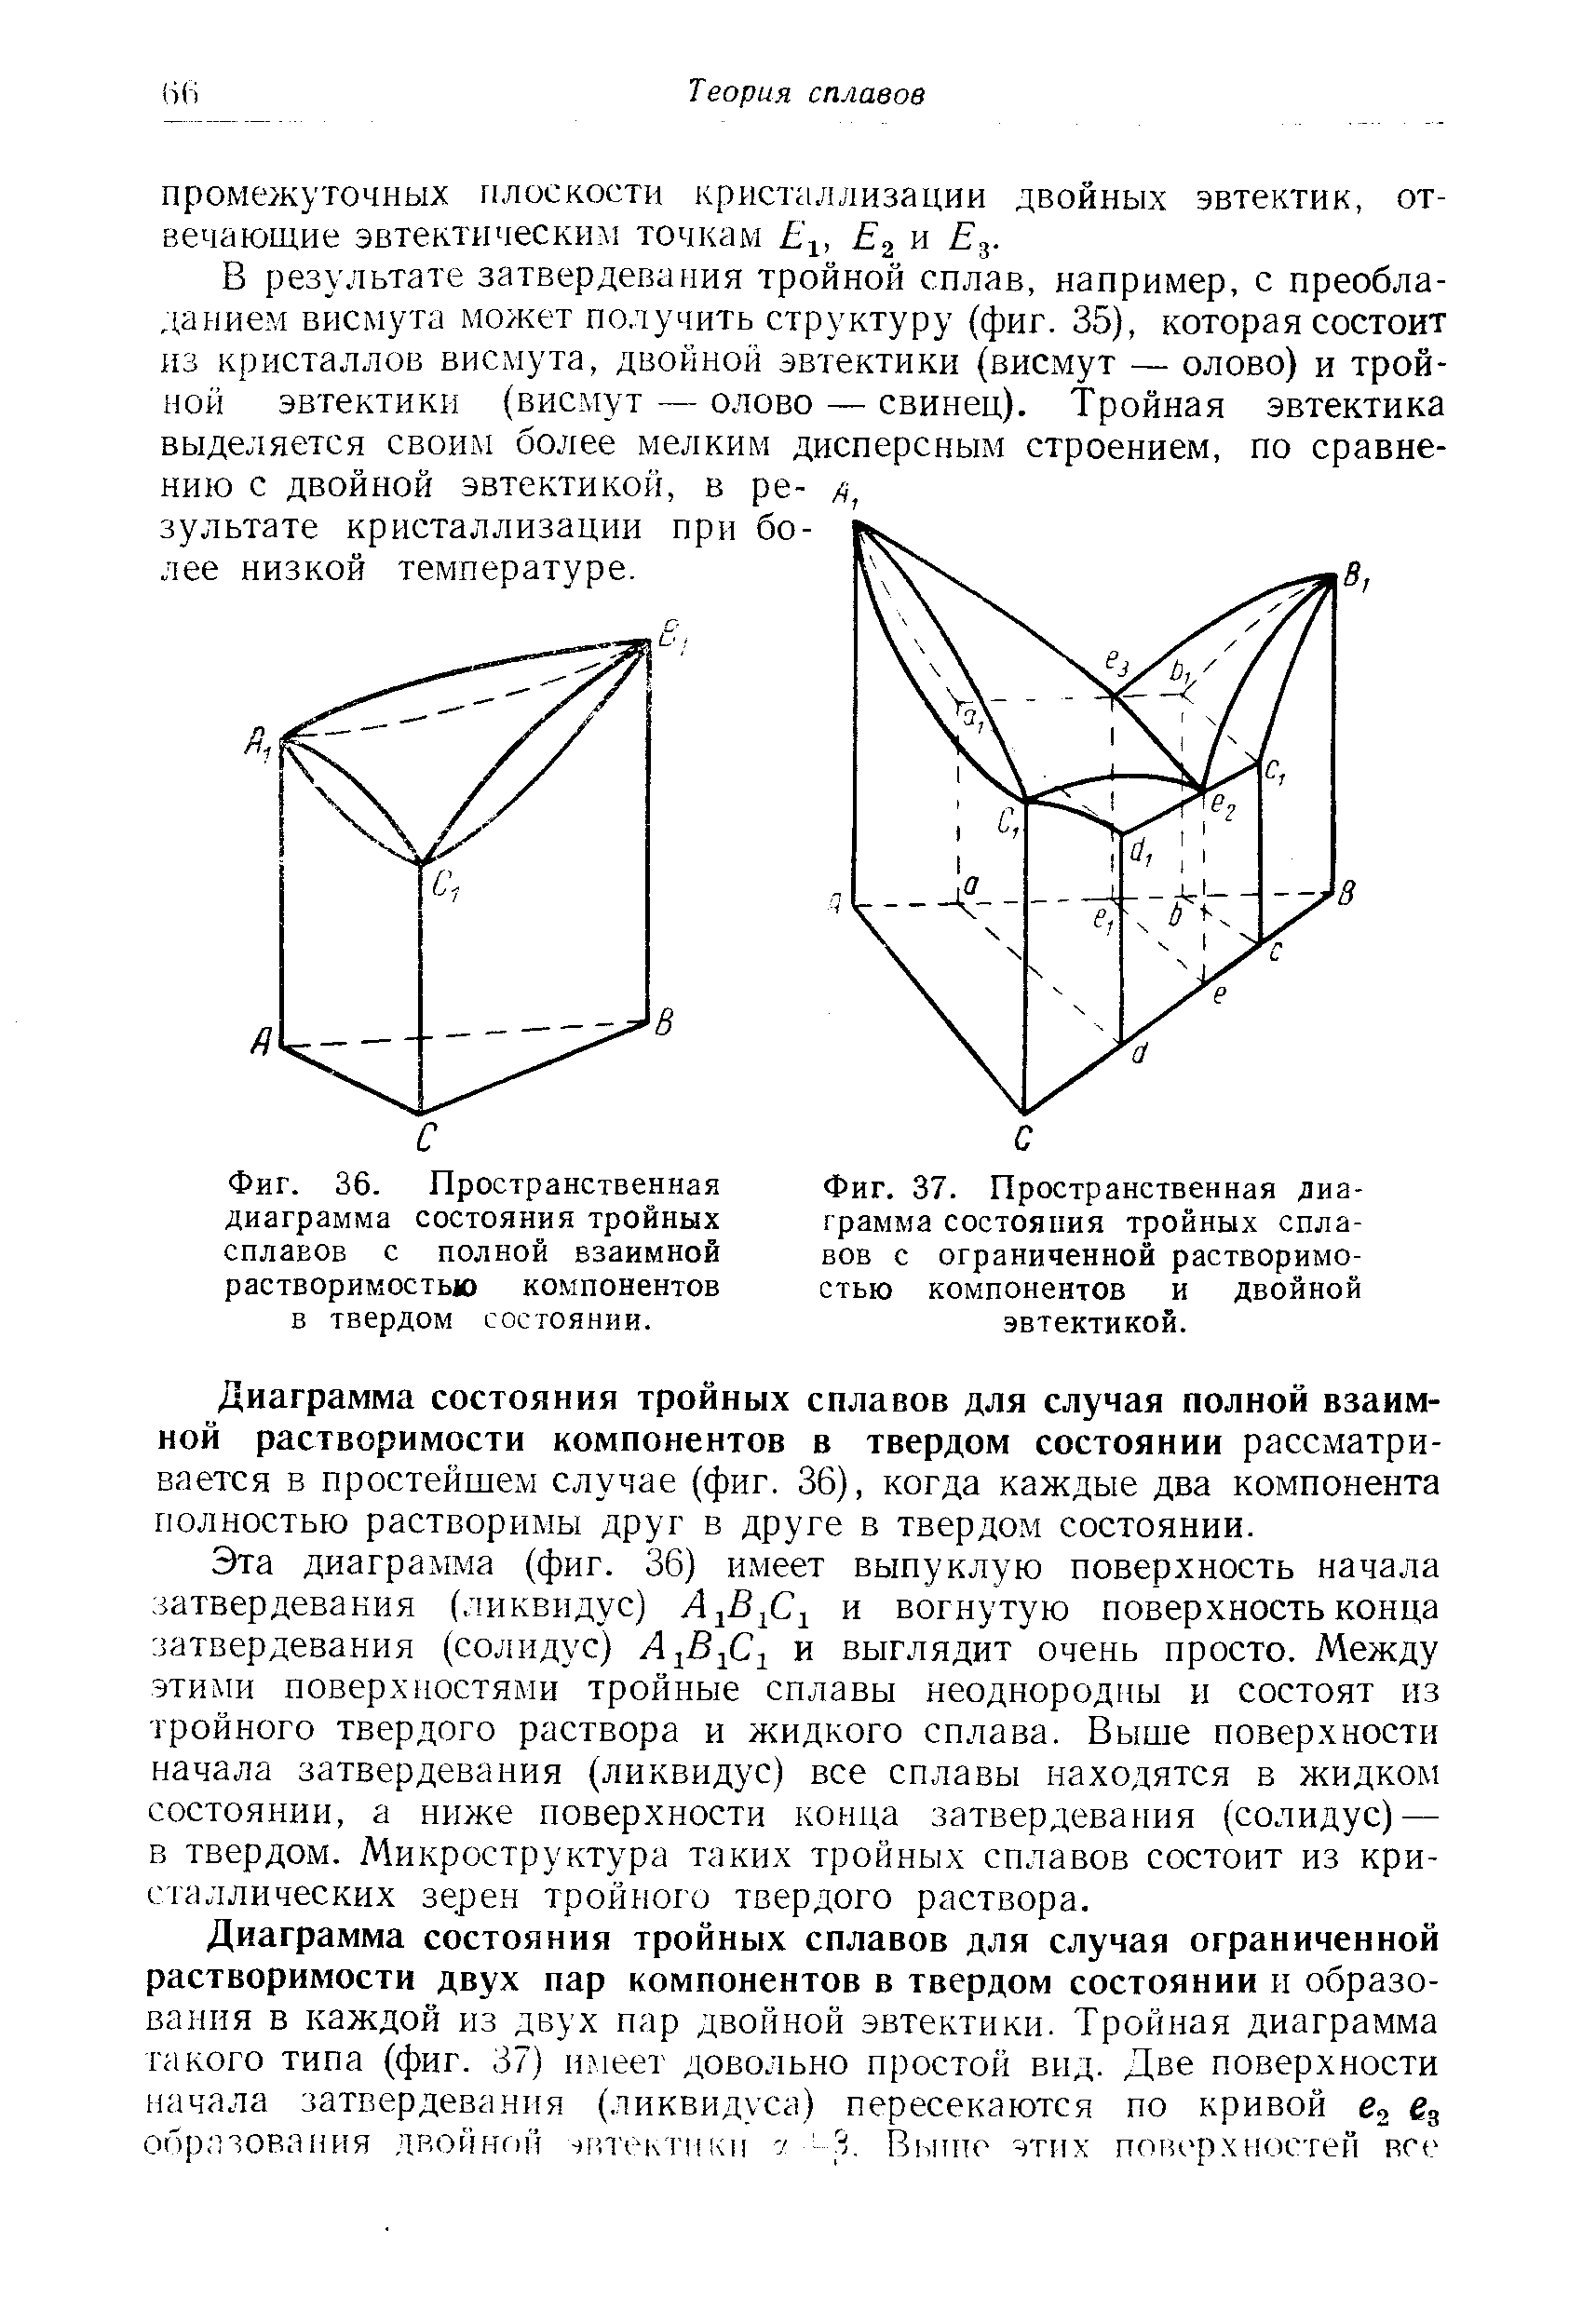 Фиг. 36. Пространственная диаграмма состояния тройных сплавов с полной взаимной растворимостью компонентов в твердом состоянии.
